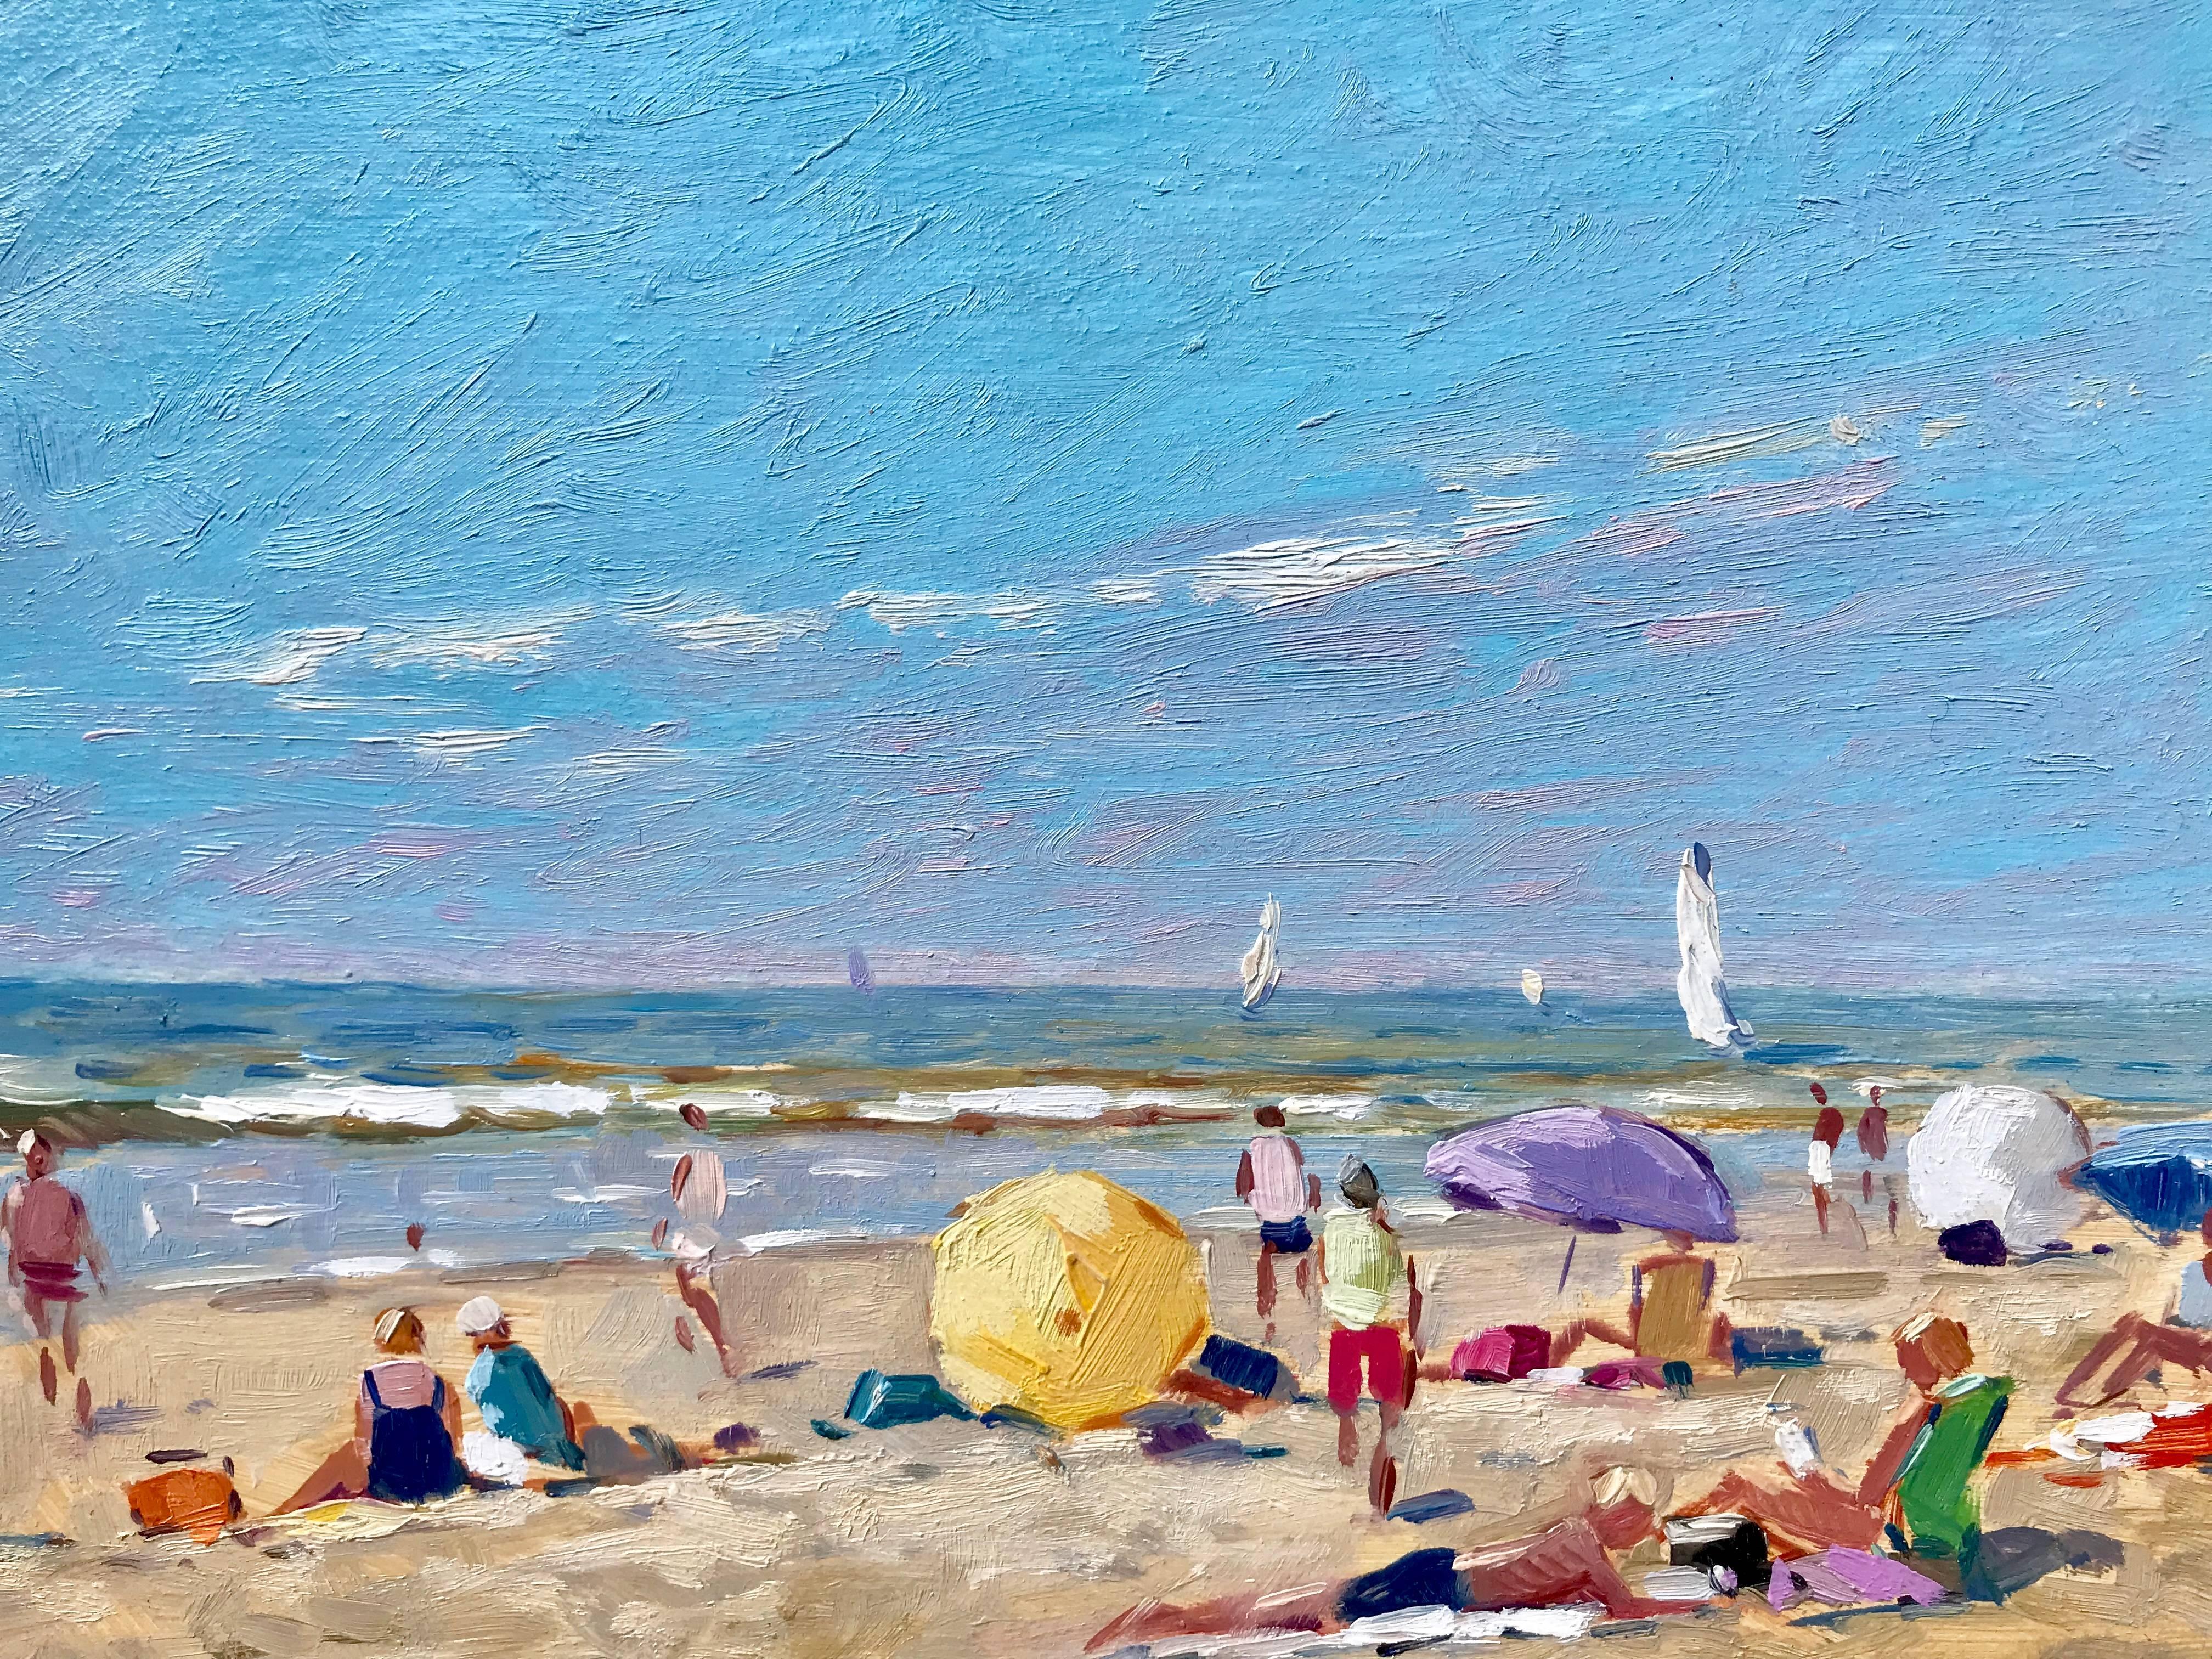 “Perfect Beach Day” - Painting by Niek van der Plas